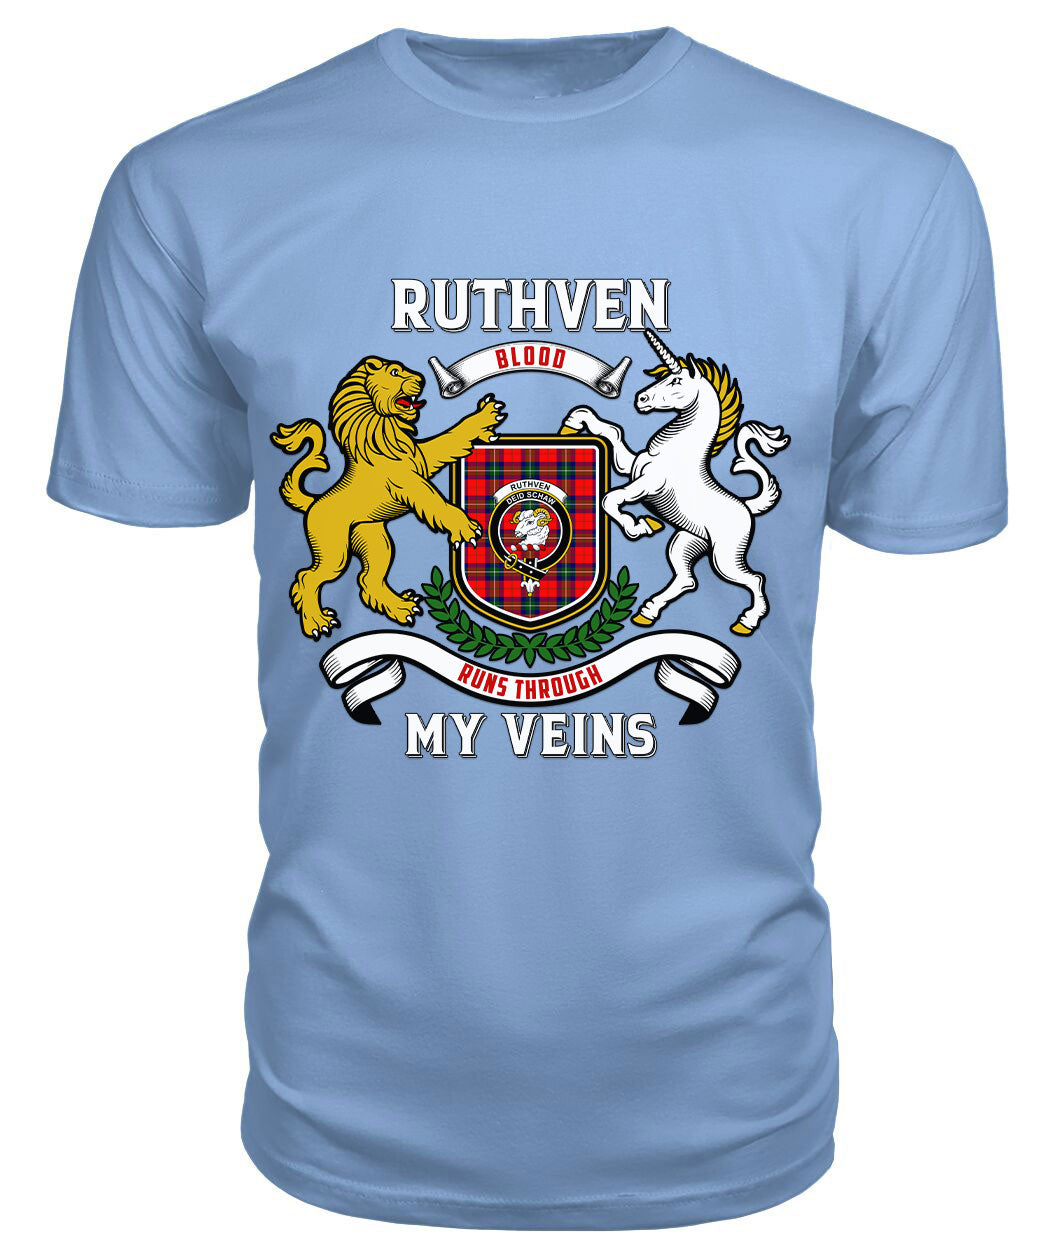 Ruthven Modern Tartan Crest 2D T-shirt - Blood Runs Through My Veins Style